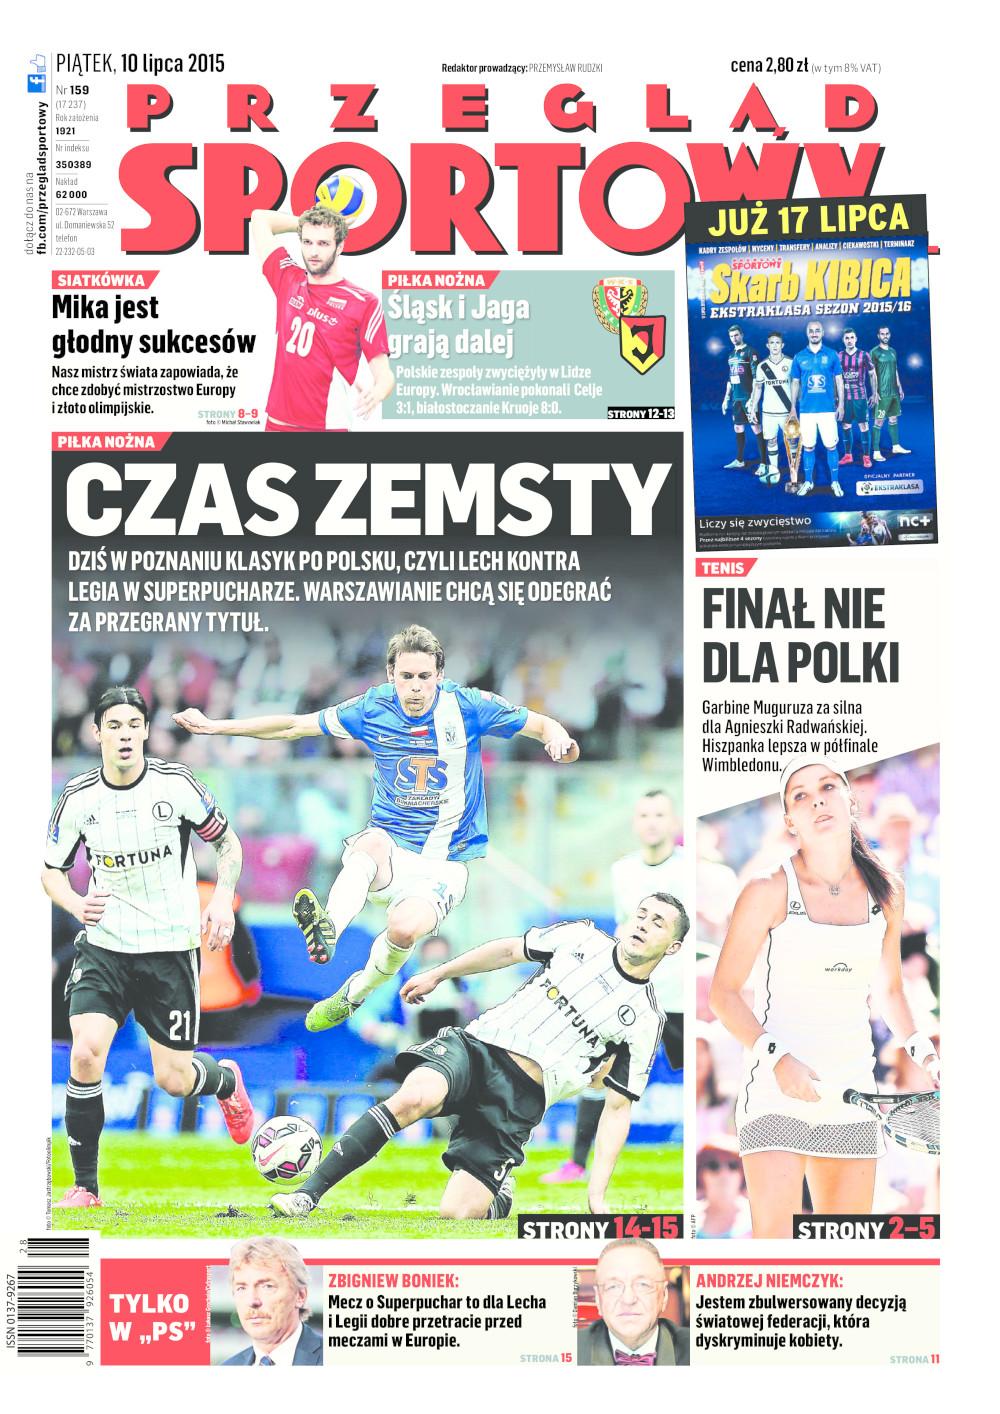 Przegląd Sportowy po Jagiellonia Białystok - Kruoja Pokroje 8:0 (09.07.2015)